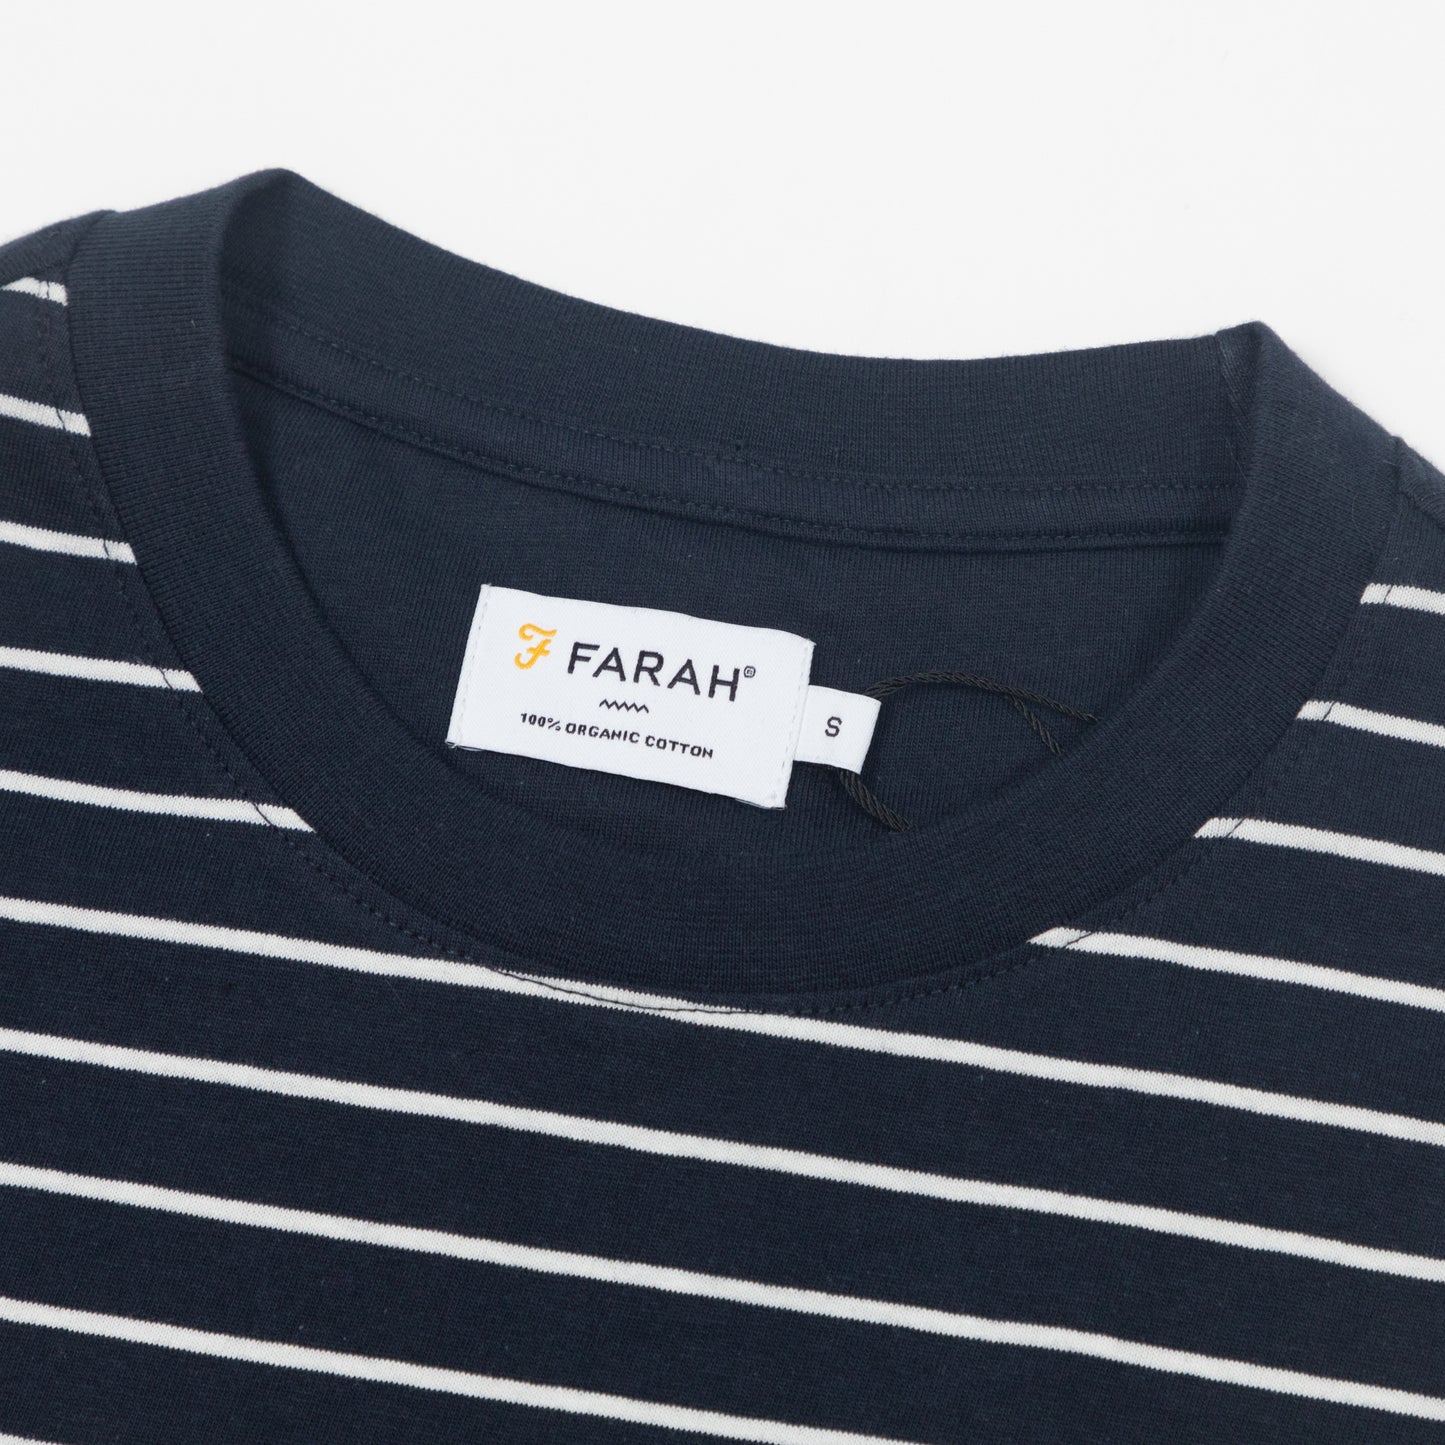 FARAH Oakland Stripe T-Shirt in WHITE & NAVY